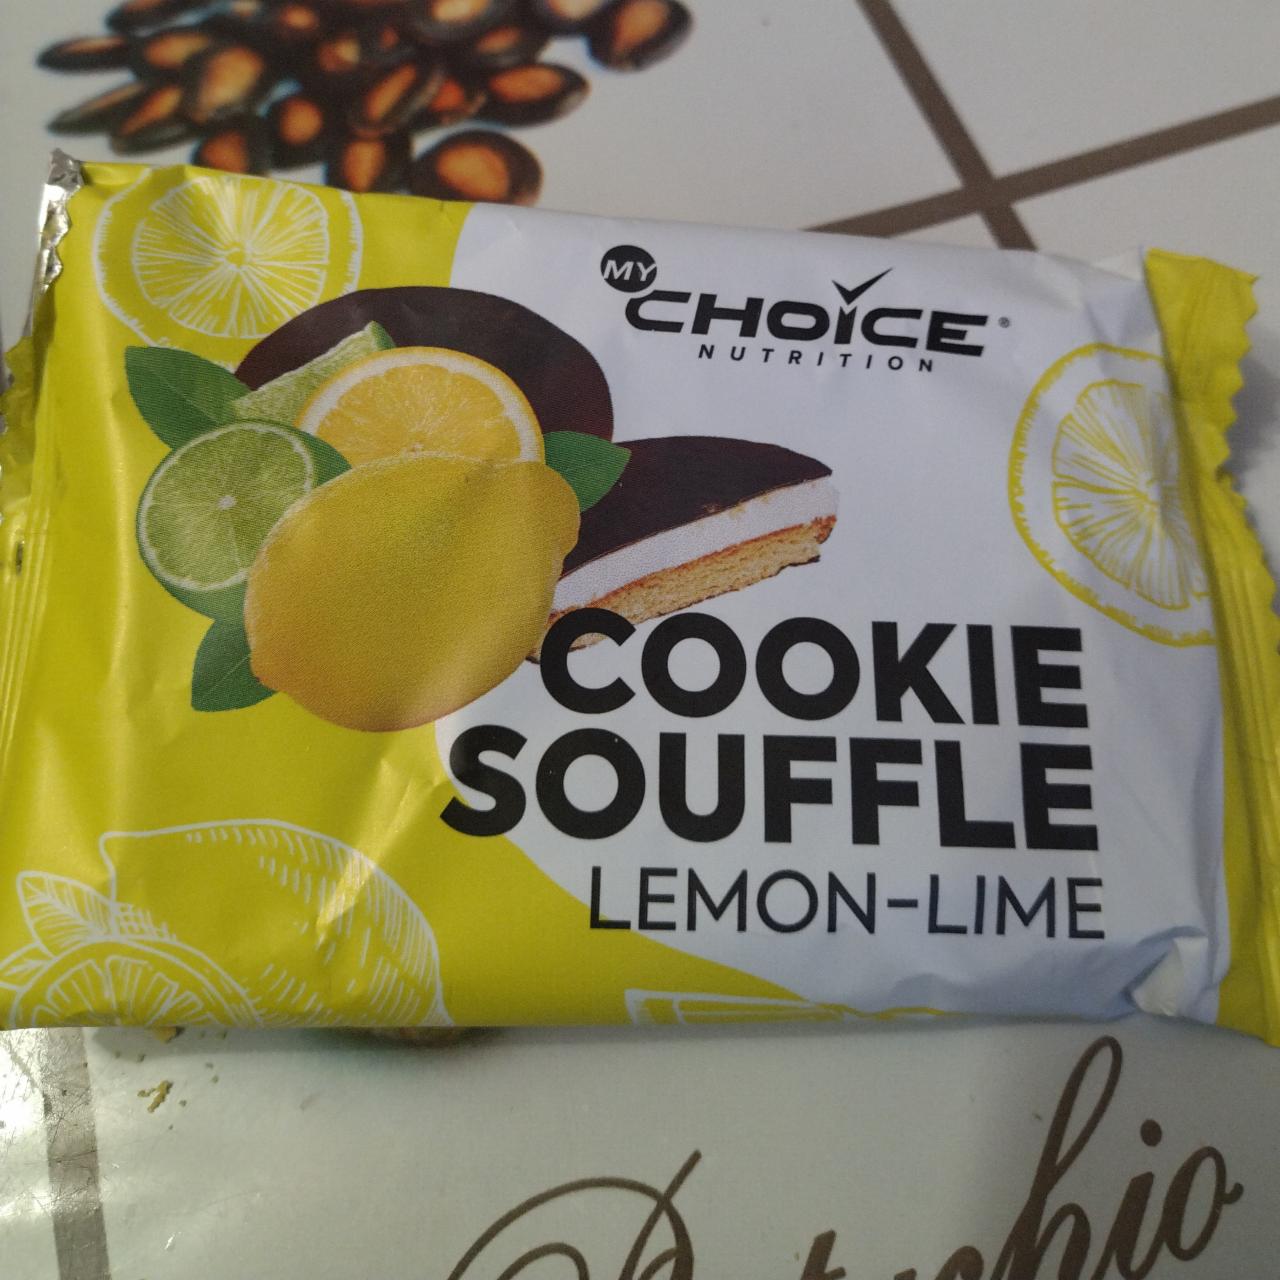 Фото - Печенье суфле со вкусом лимон лайм MyChoice Nutrition